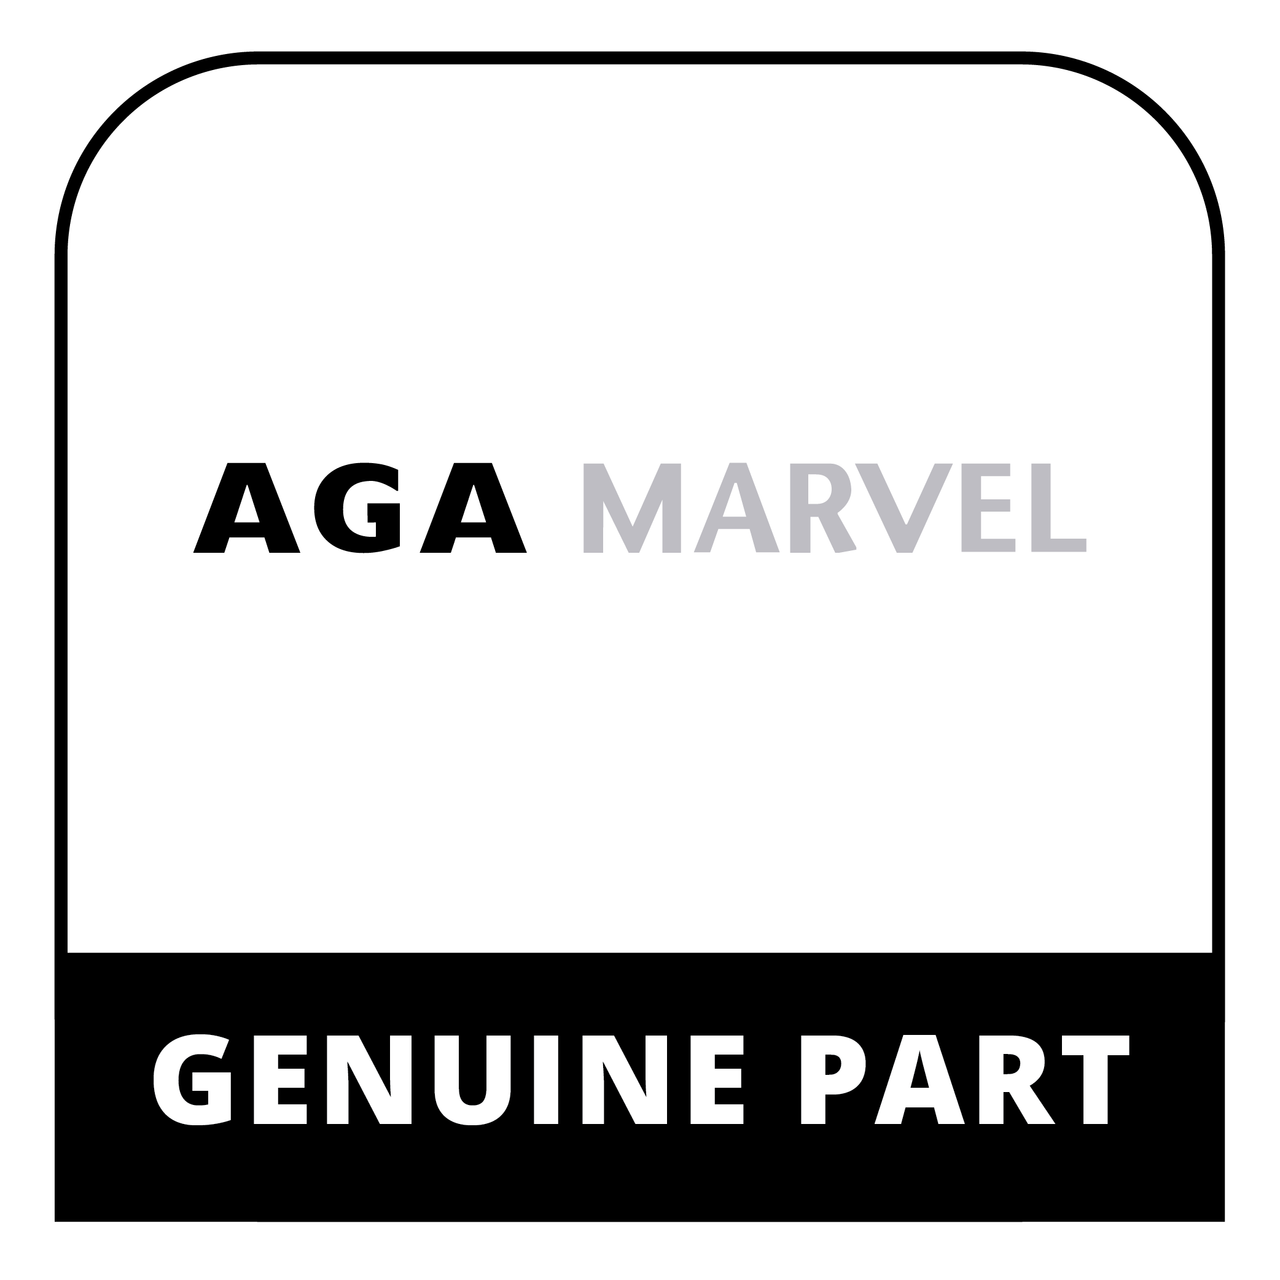 AGA Marvel R5828 - Packing Gfg10145 Ckrbrn 480 Cd - Genuine AGA Marvel Part